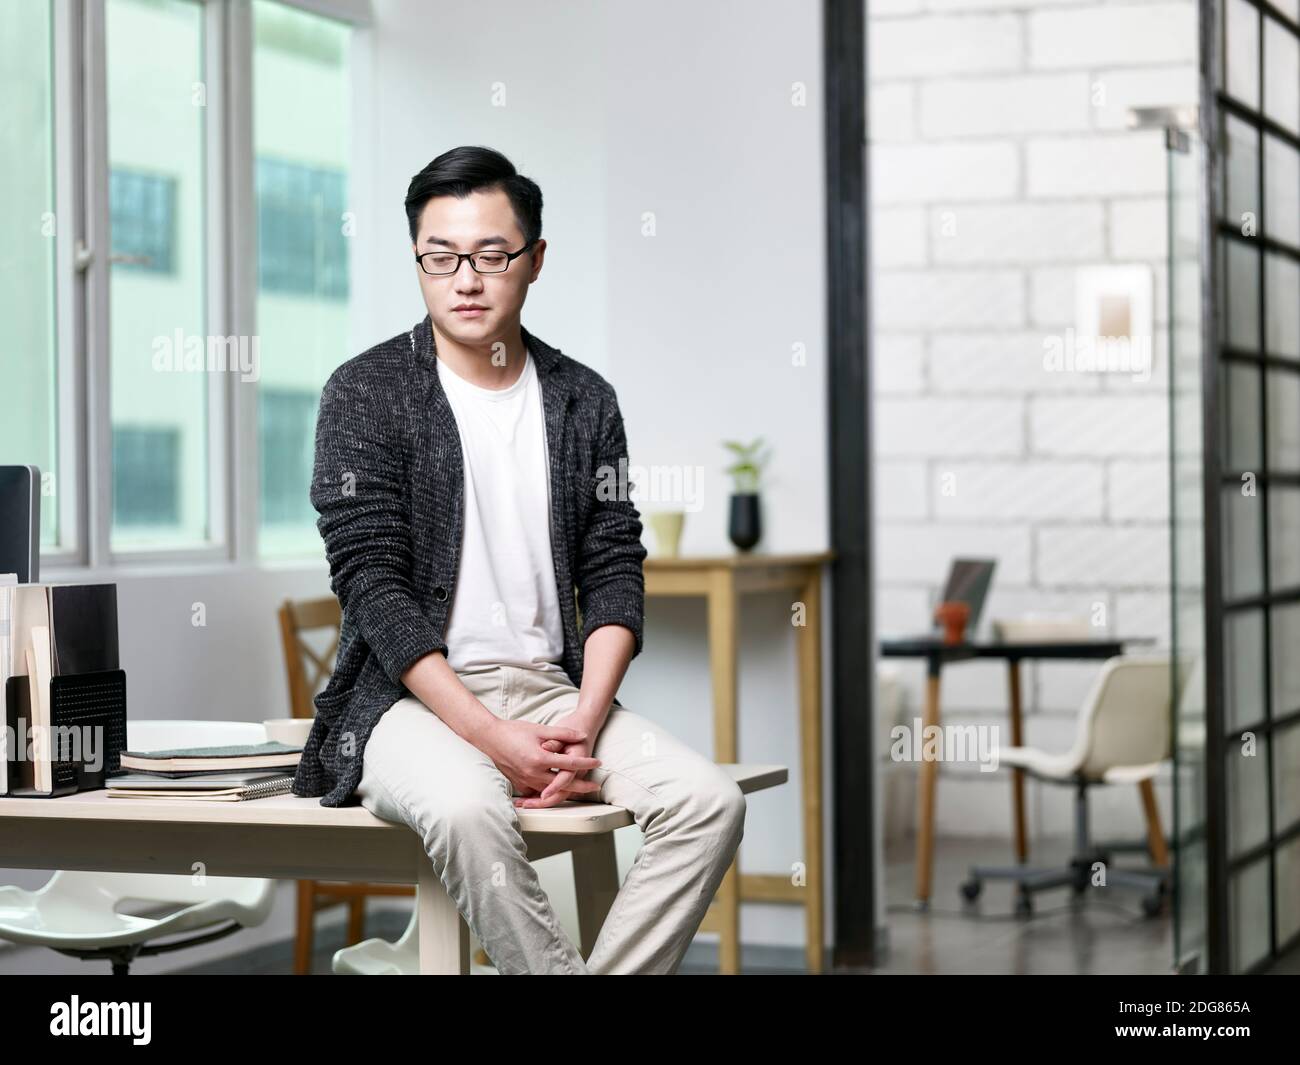 Porträt eines jungen asiatischen Geschäftsmannes, der im Büro auf dem Schreibtisch sitzt Blick nach unten Stockfoto